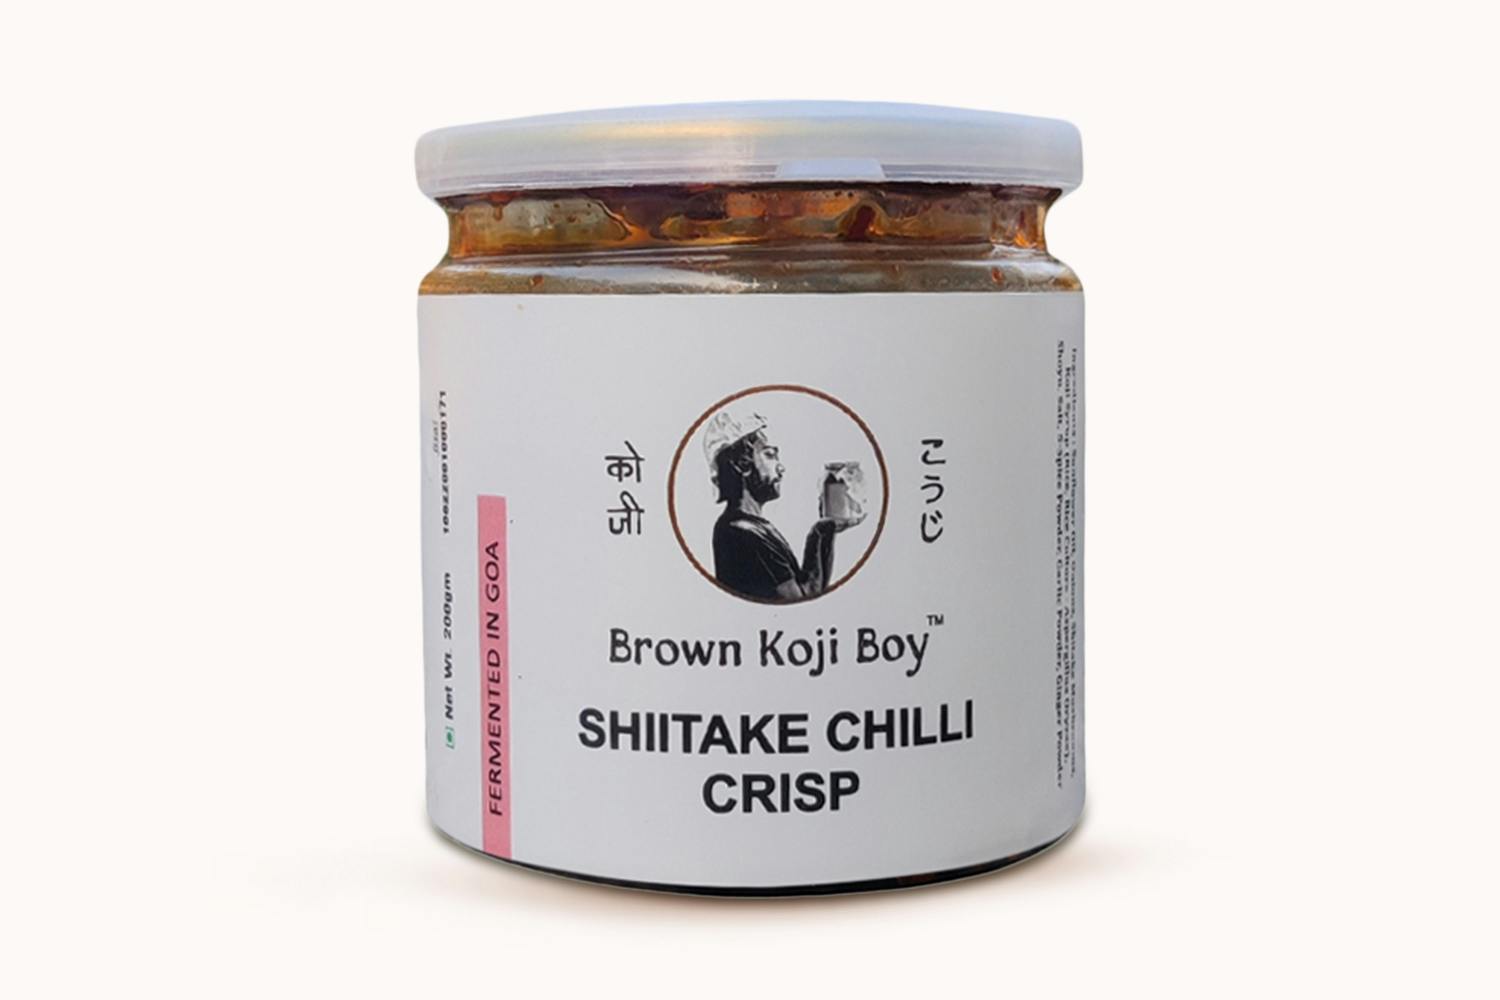 Brown Koji Boy Shitake Chilli Crisp